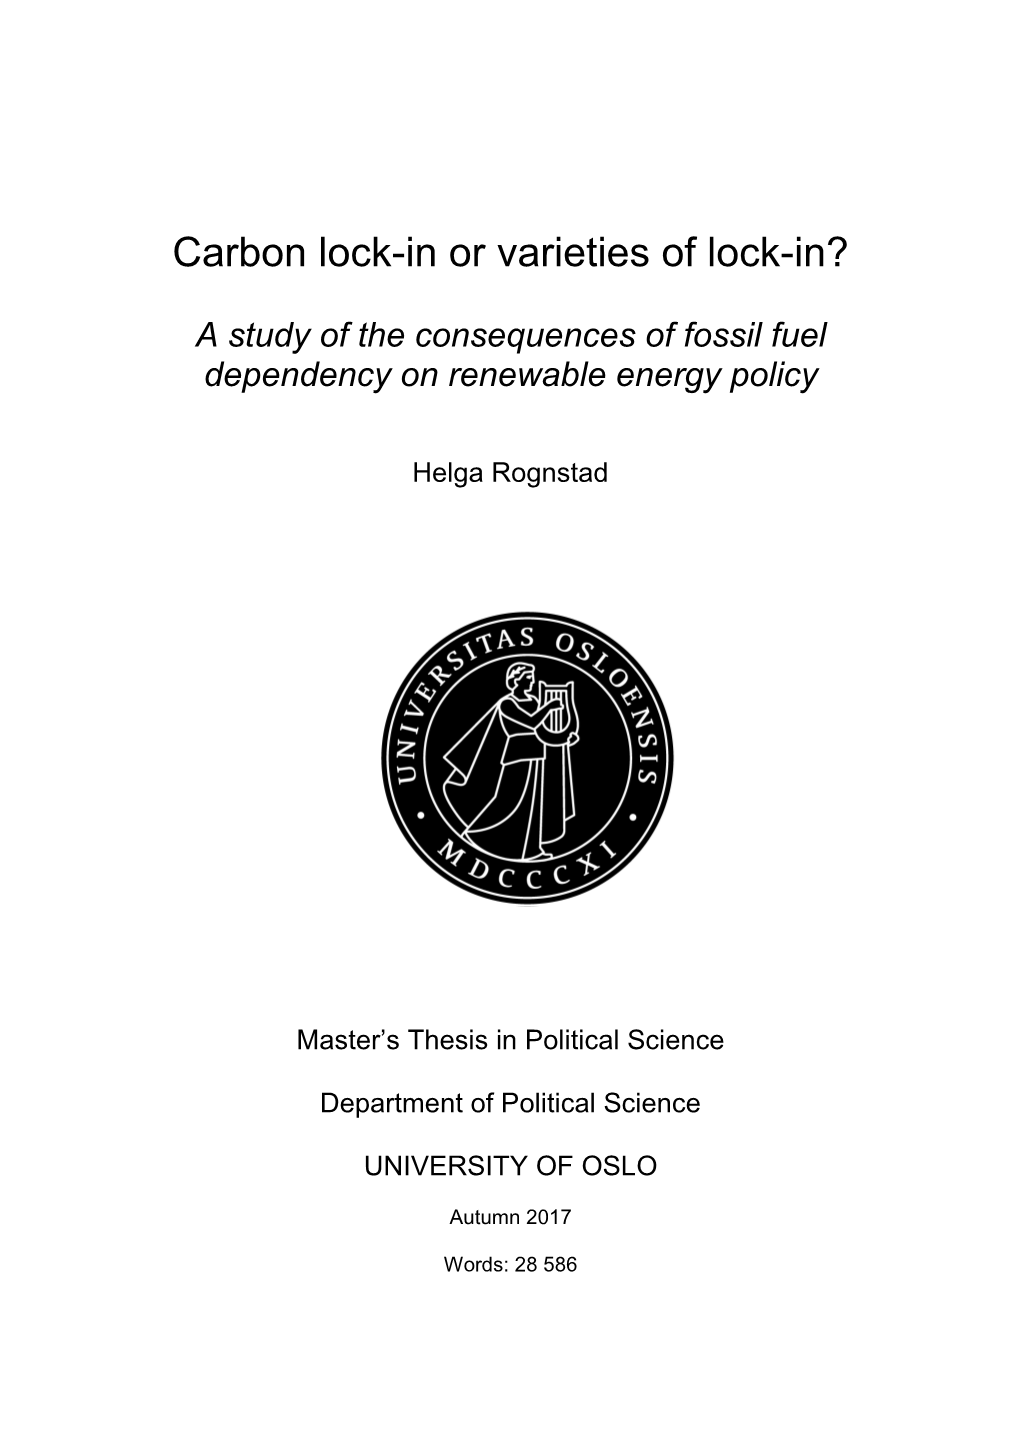 Carbon Lock-In Or Varieties of Lock-In?